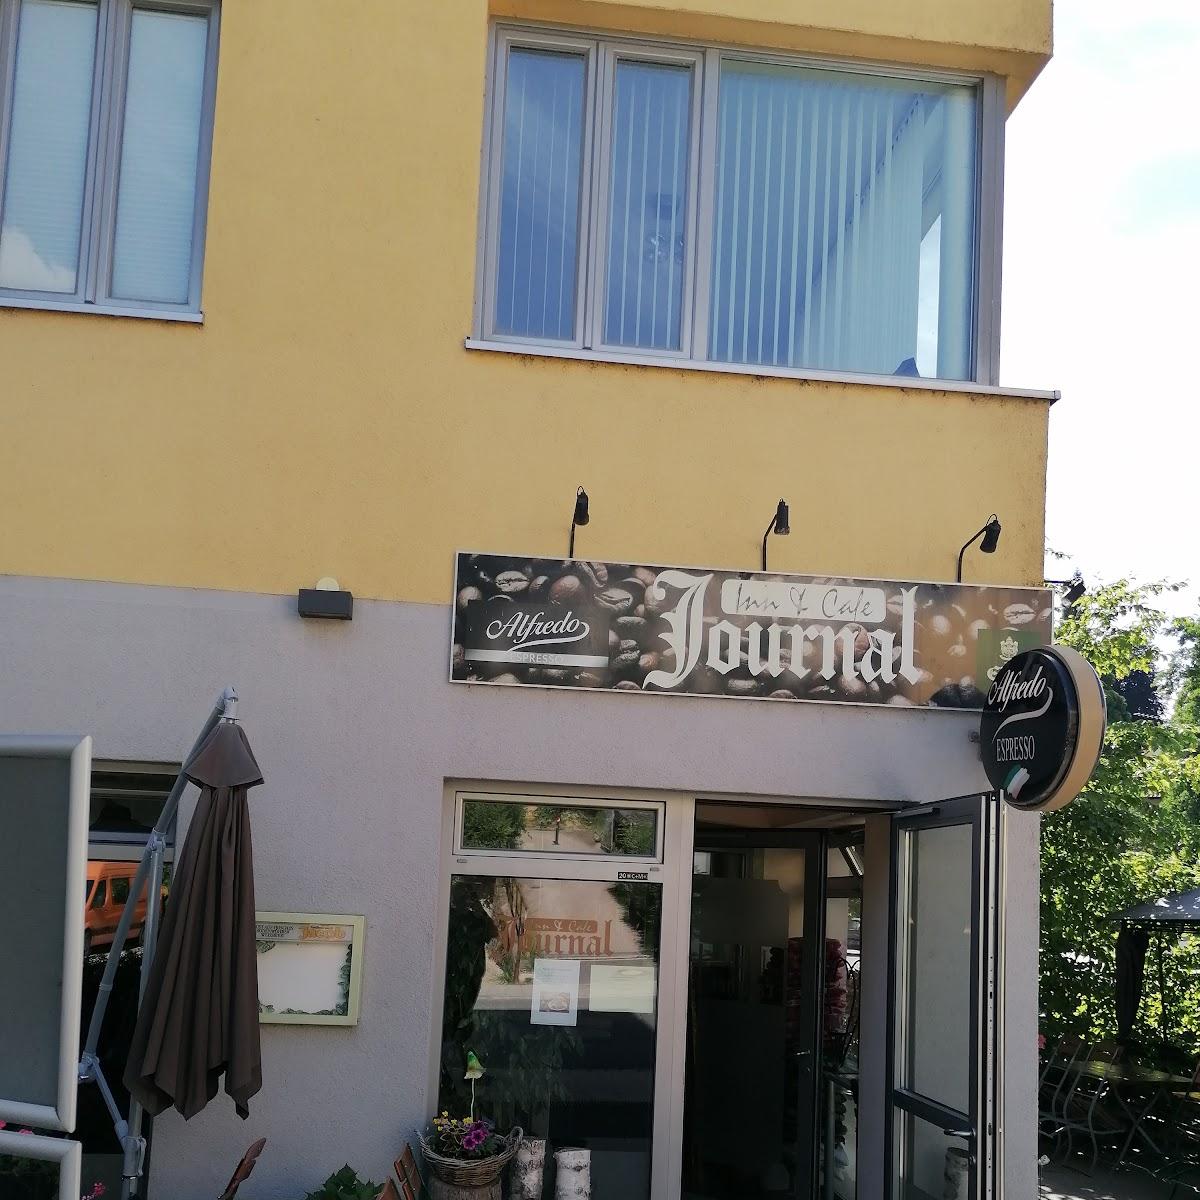 Restaurant "Inn & Café Journal - Marina Kuschtscha" in Cham